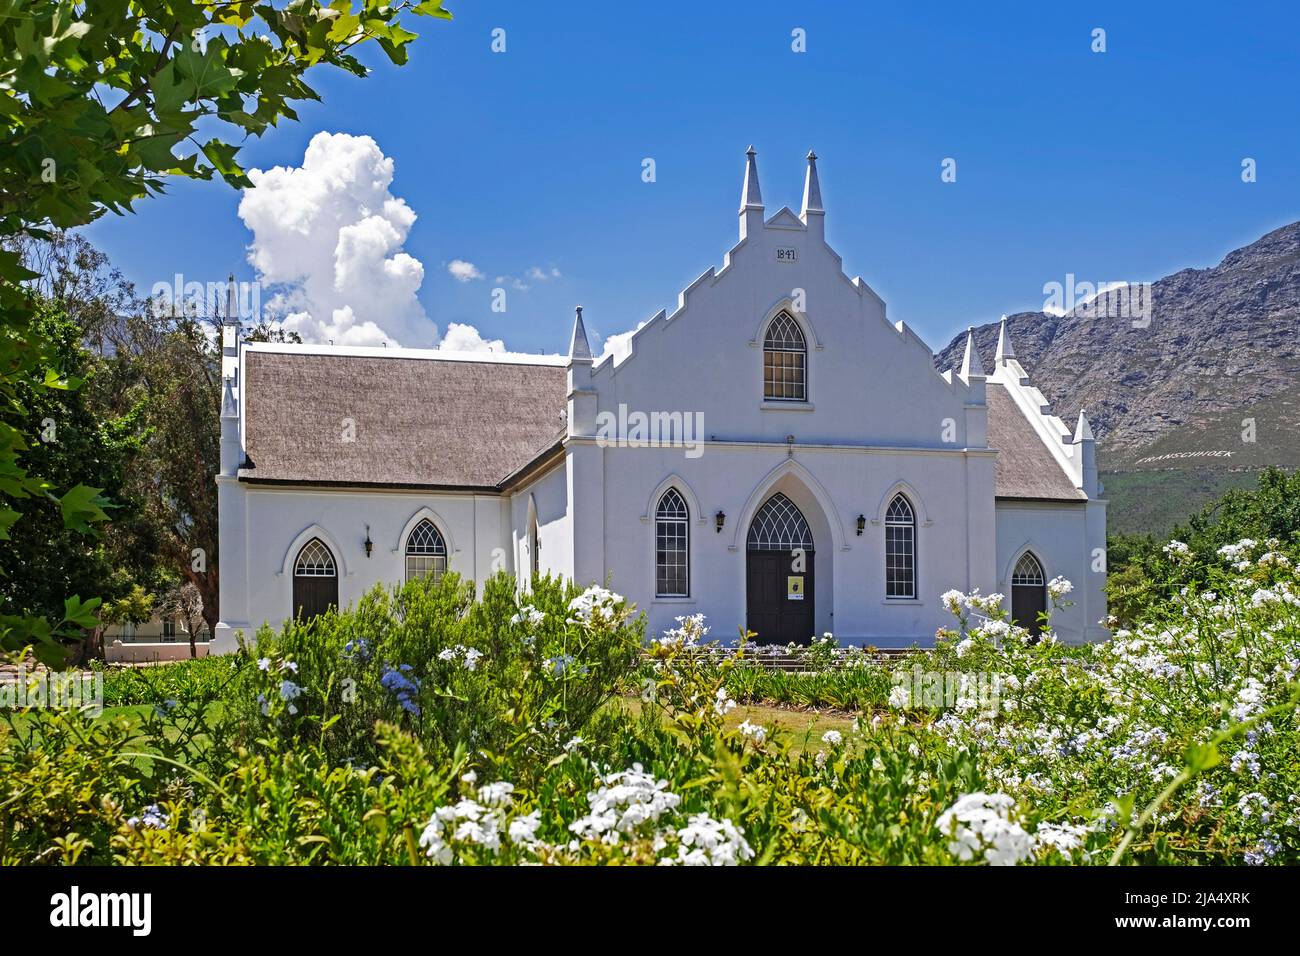 Holländische reformierte Kirche im kapholländischen Stil in Franschhoek, Stellenbosch, Cape Winelands, Western Cape Province, Südafrika Stockfoto